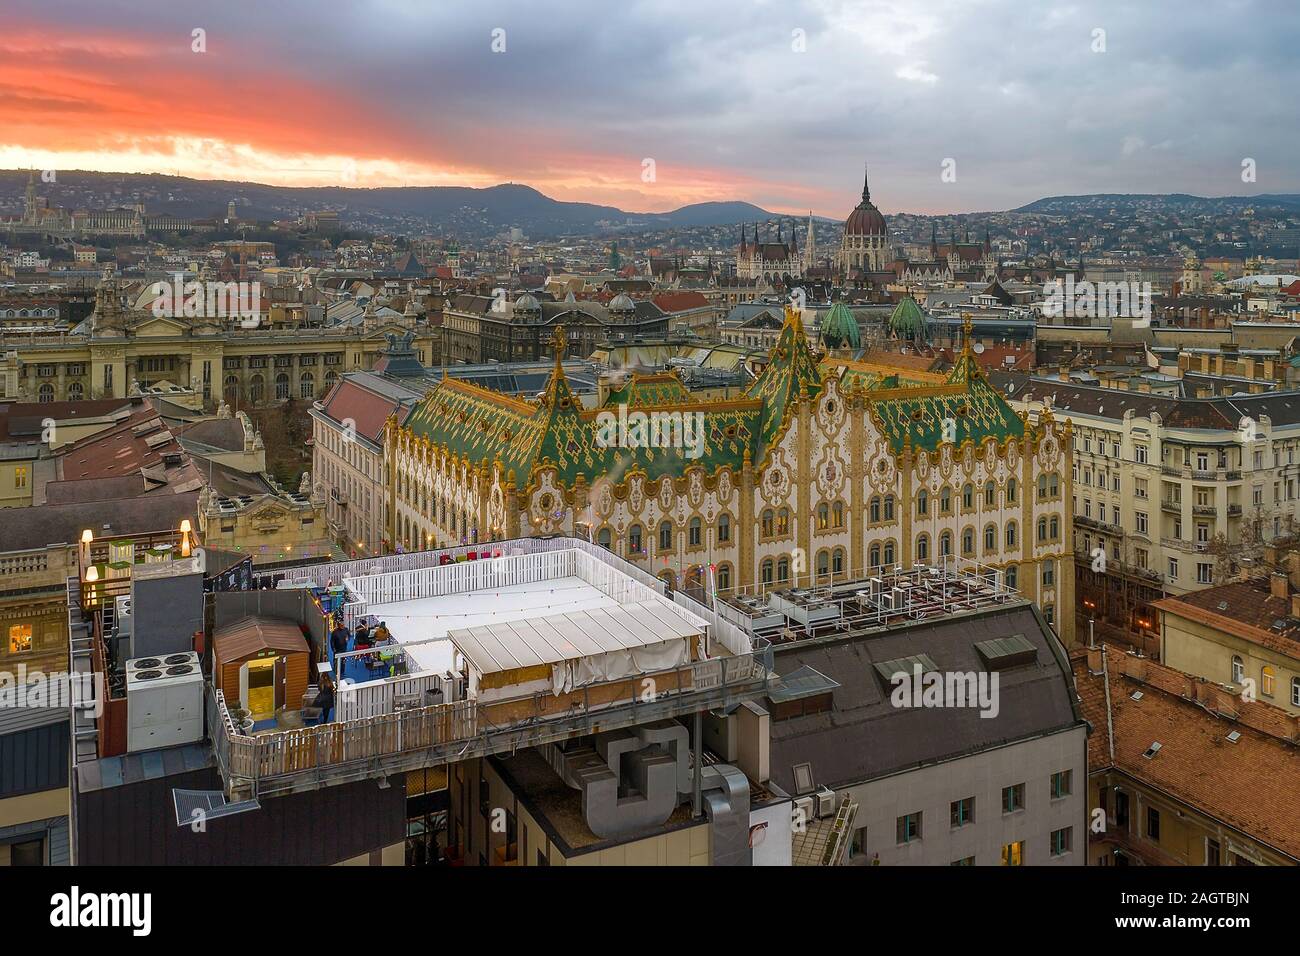 Incredibile tetto in Budapest, Ungheria. Tesoreria di stato edificio con parlamento ungherese nel periodo invernale. Tutte le tegole sul tetto realizzato dal mondo famo Foto Stock